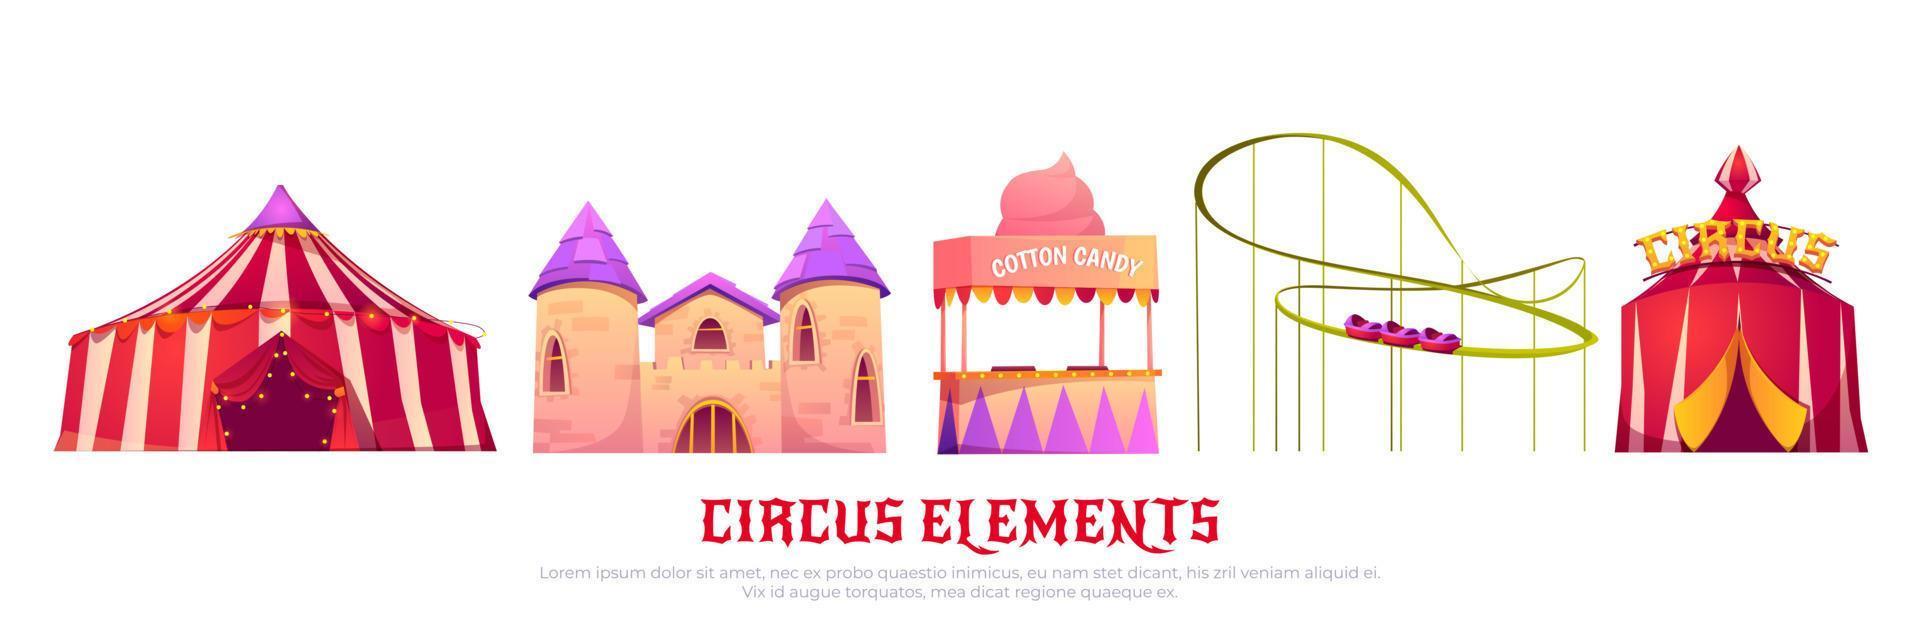 carnevale luna park con circo e rullo sottobicchiere vettore